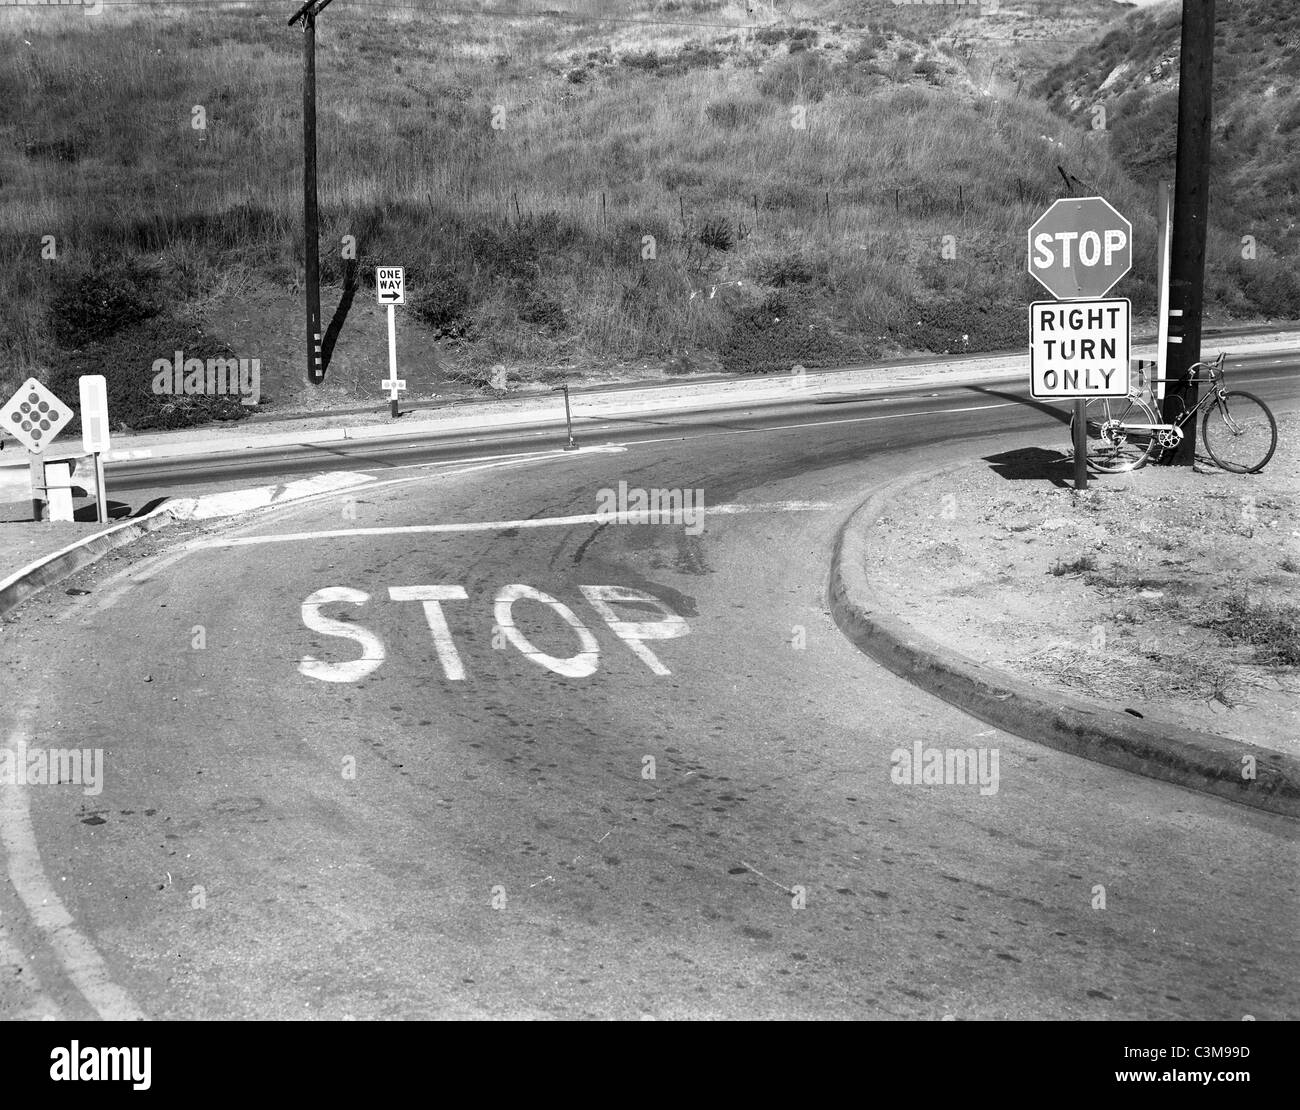 Los Angeles Straßenszene Fahrrad alternative Verkehrsmittel Öl Krisen Stoppschild Einweg Straße Hügel trocken grass Kalifornien der 70er Jahre Stockfoto